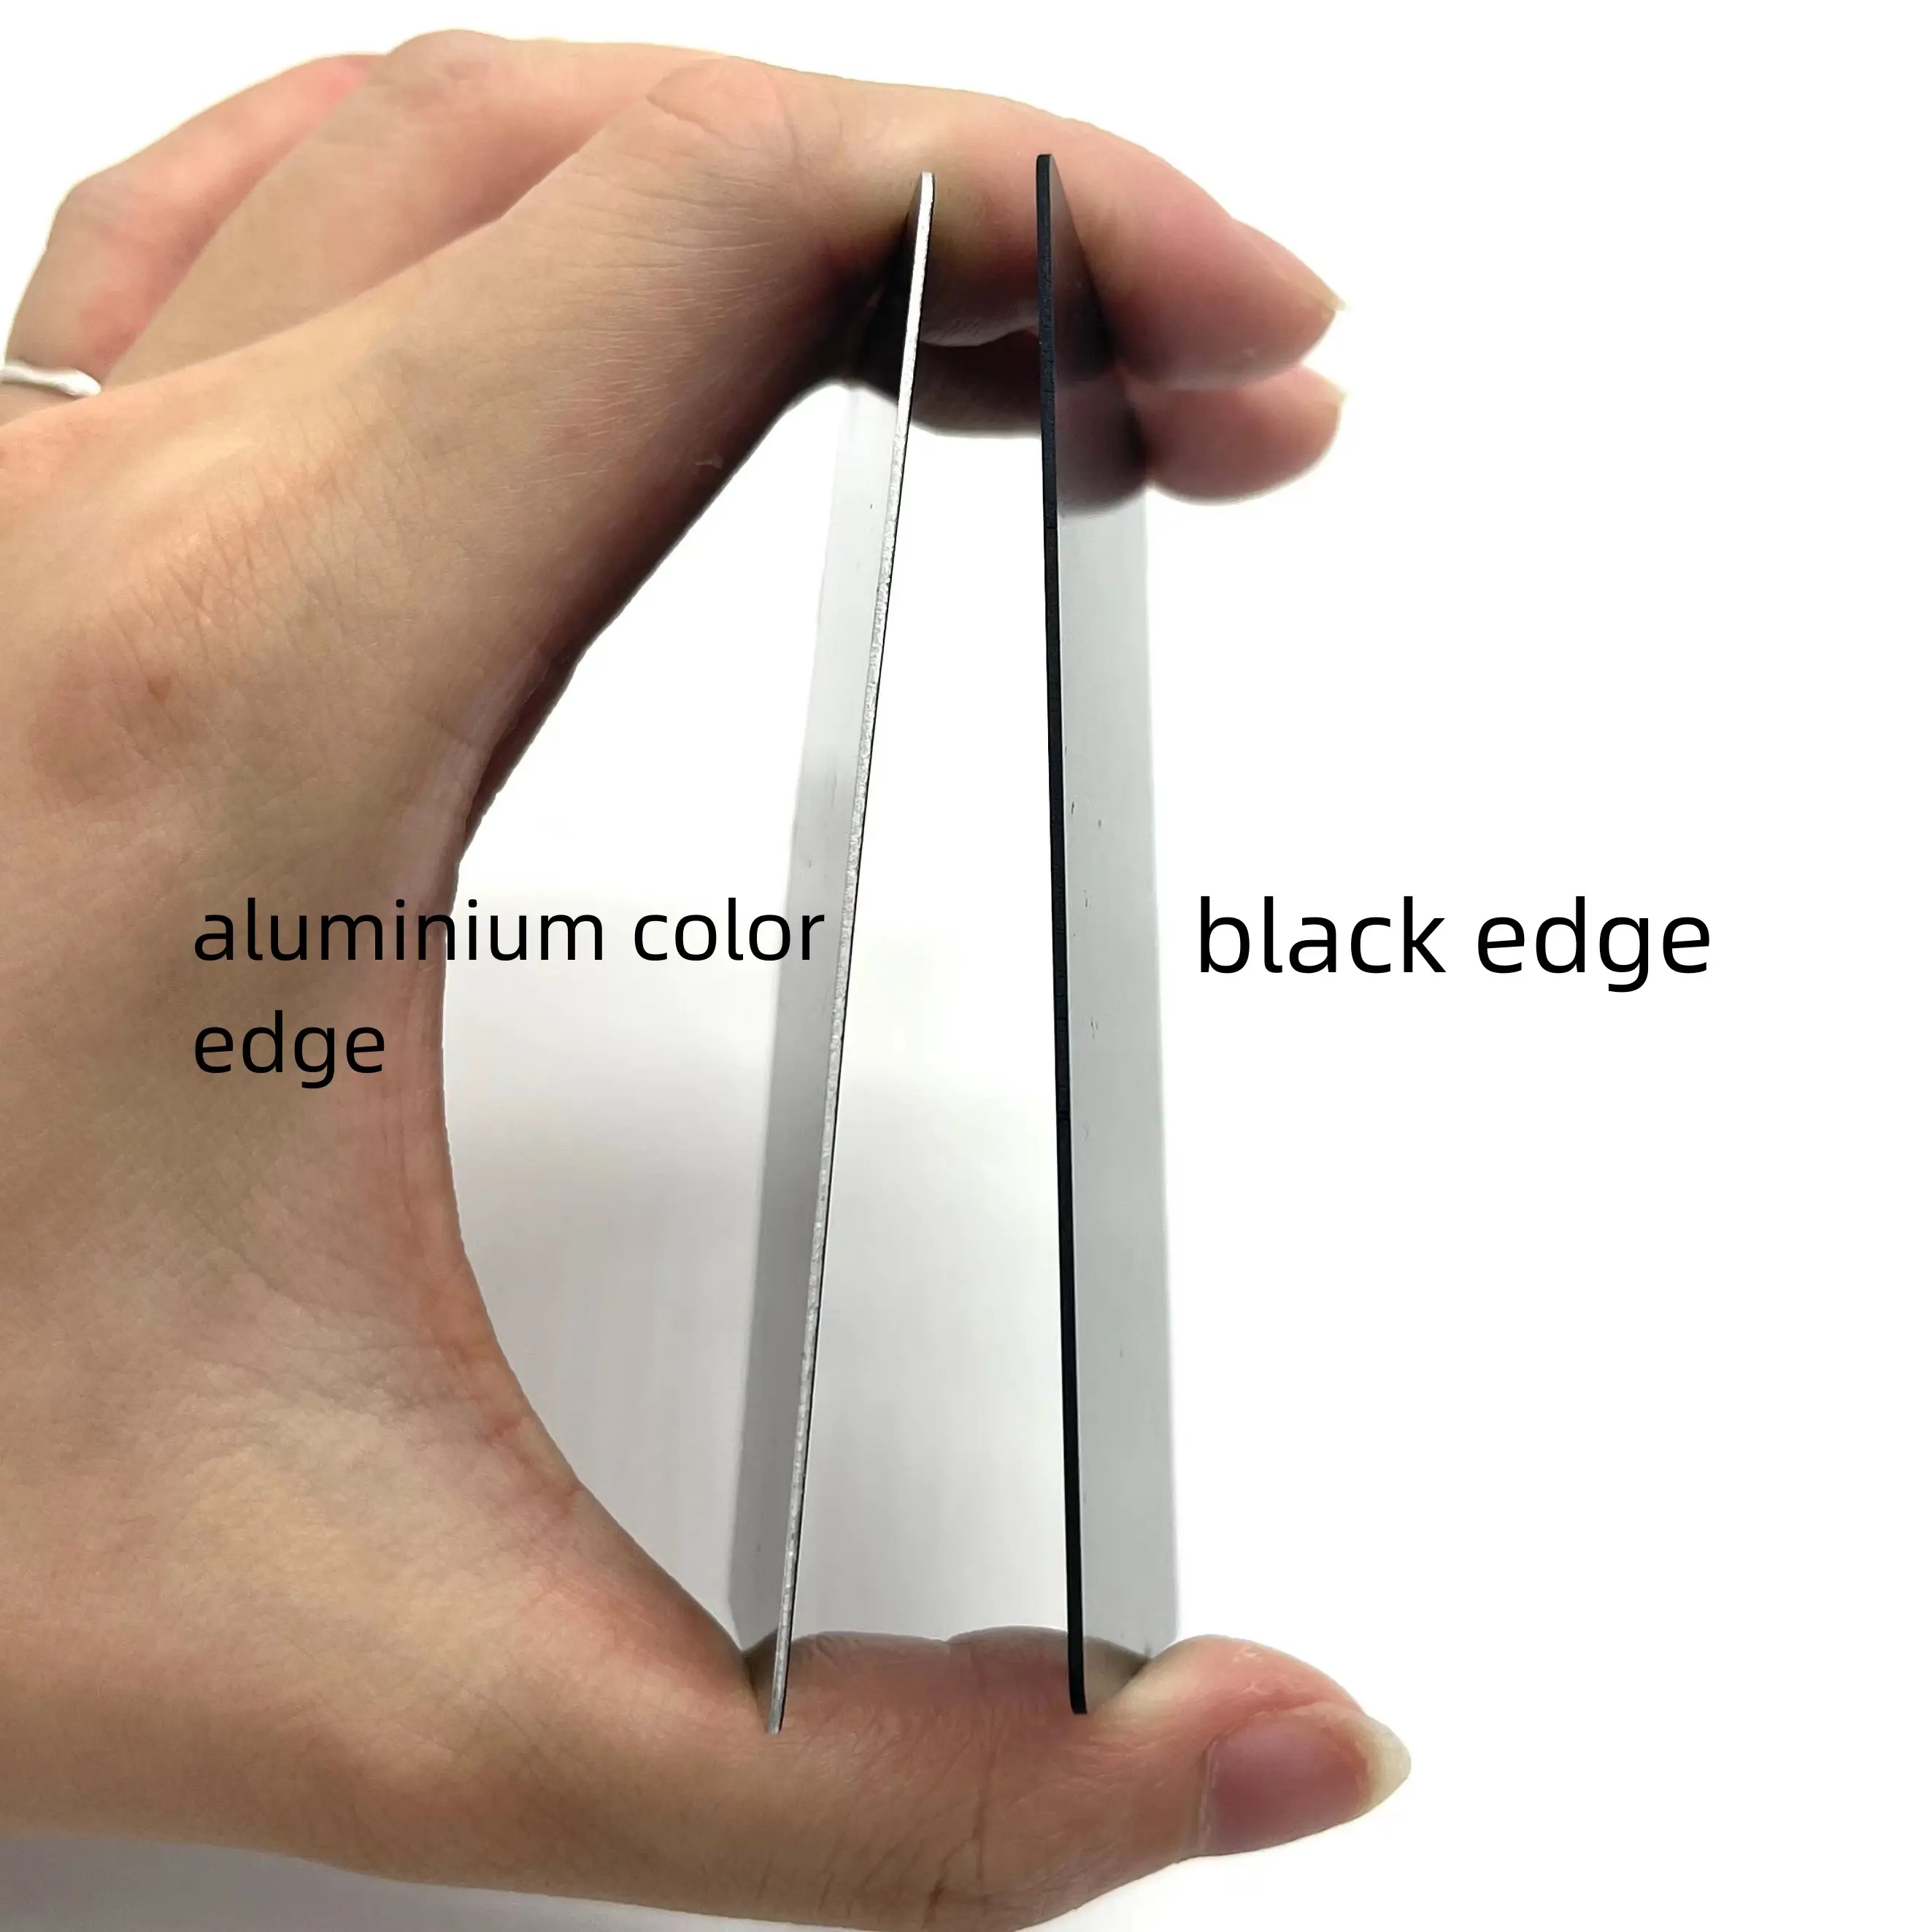 0.8mmマットブラックホワイトエッジ陽極酸化表面レーザー刻印プリントメタルクレジットカードアルミニウム名刺ブランク用カスタム